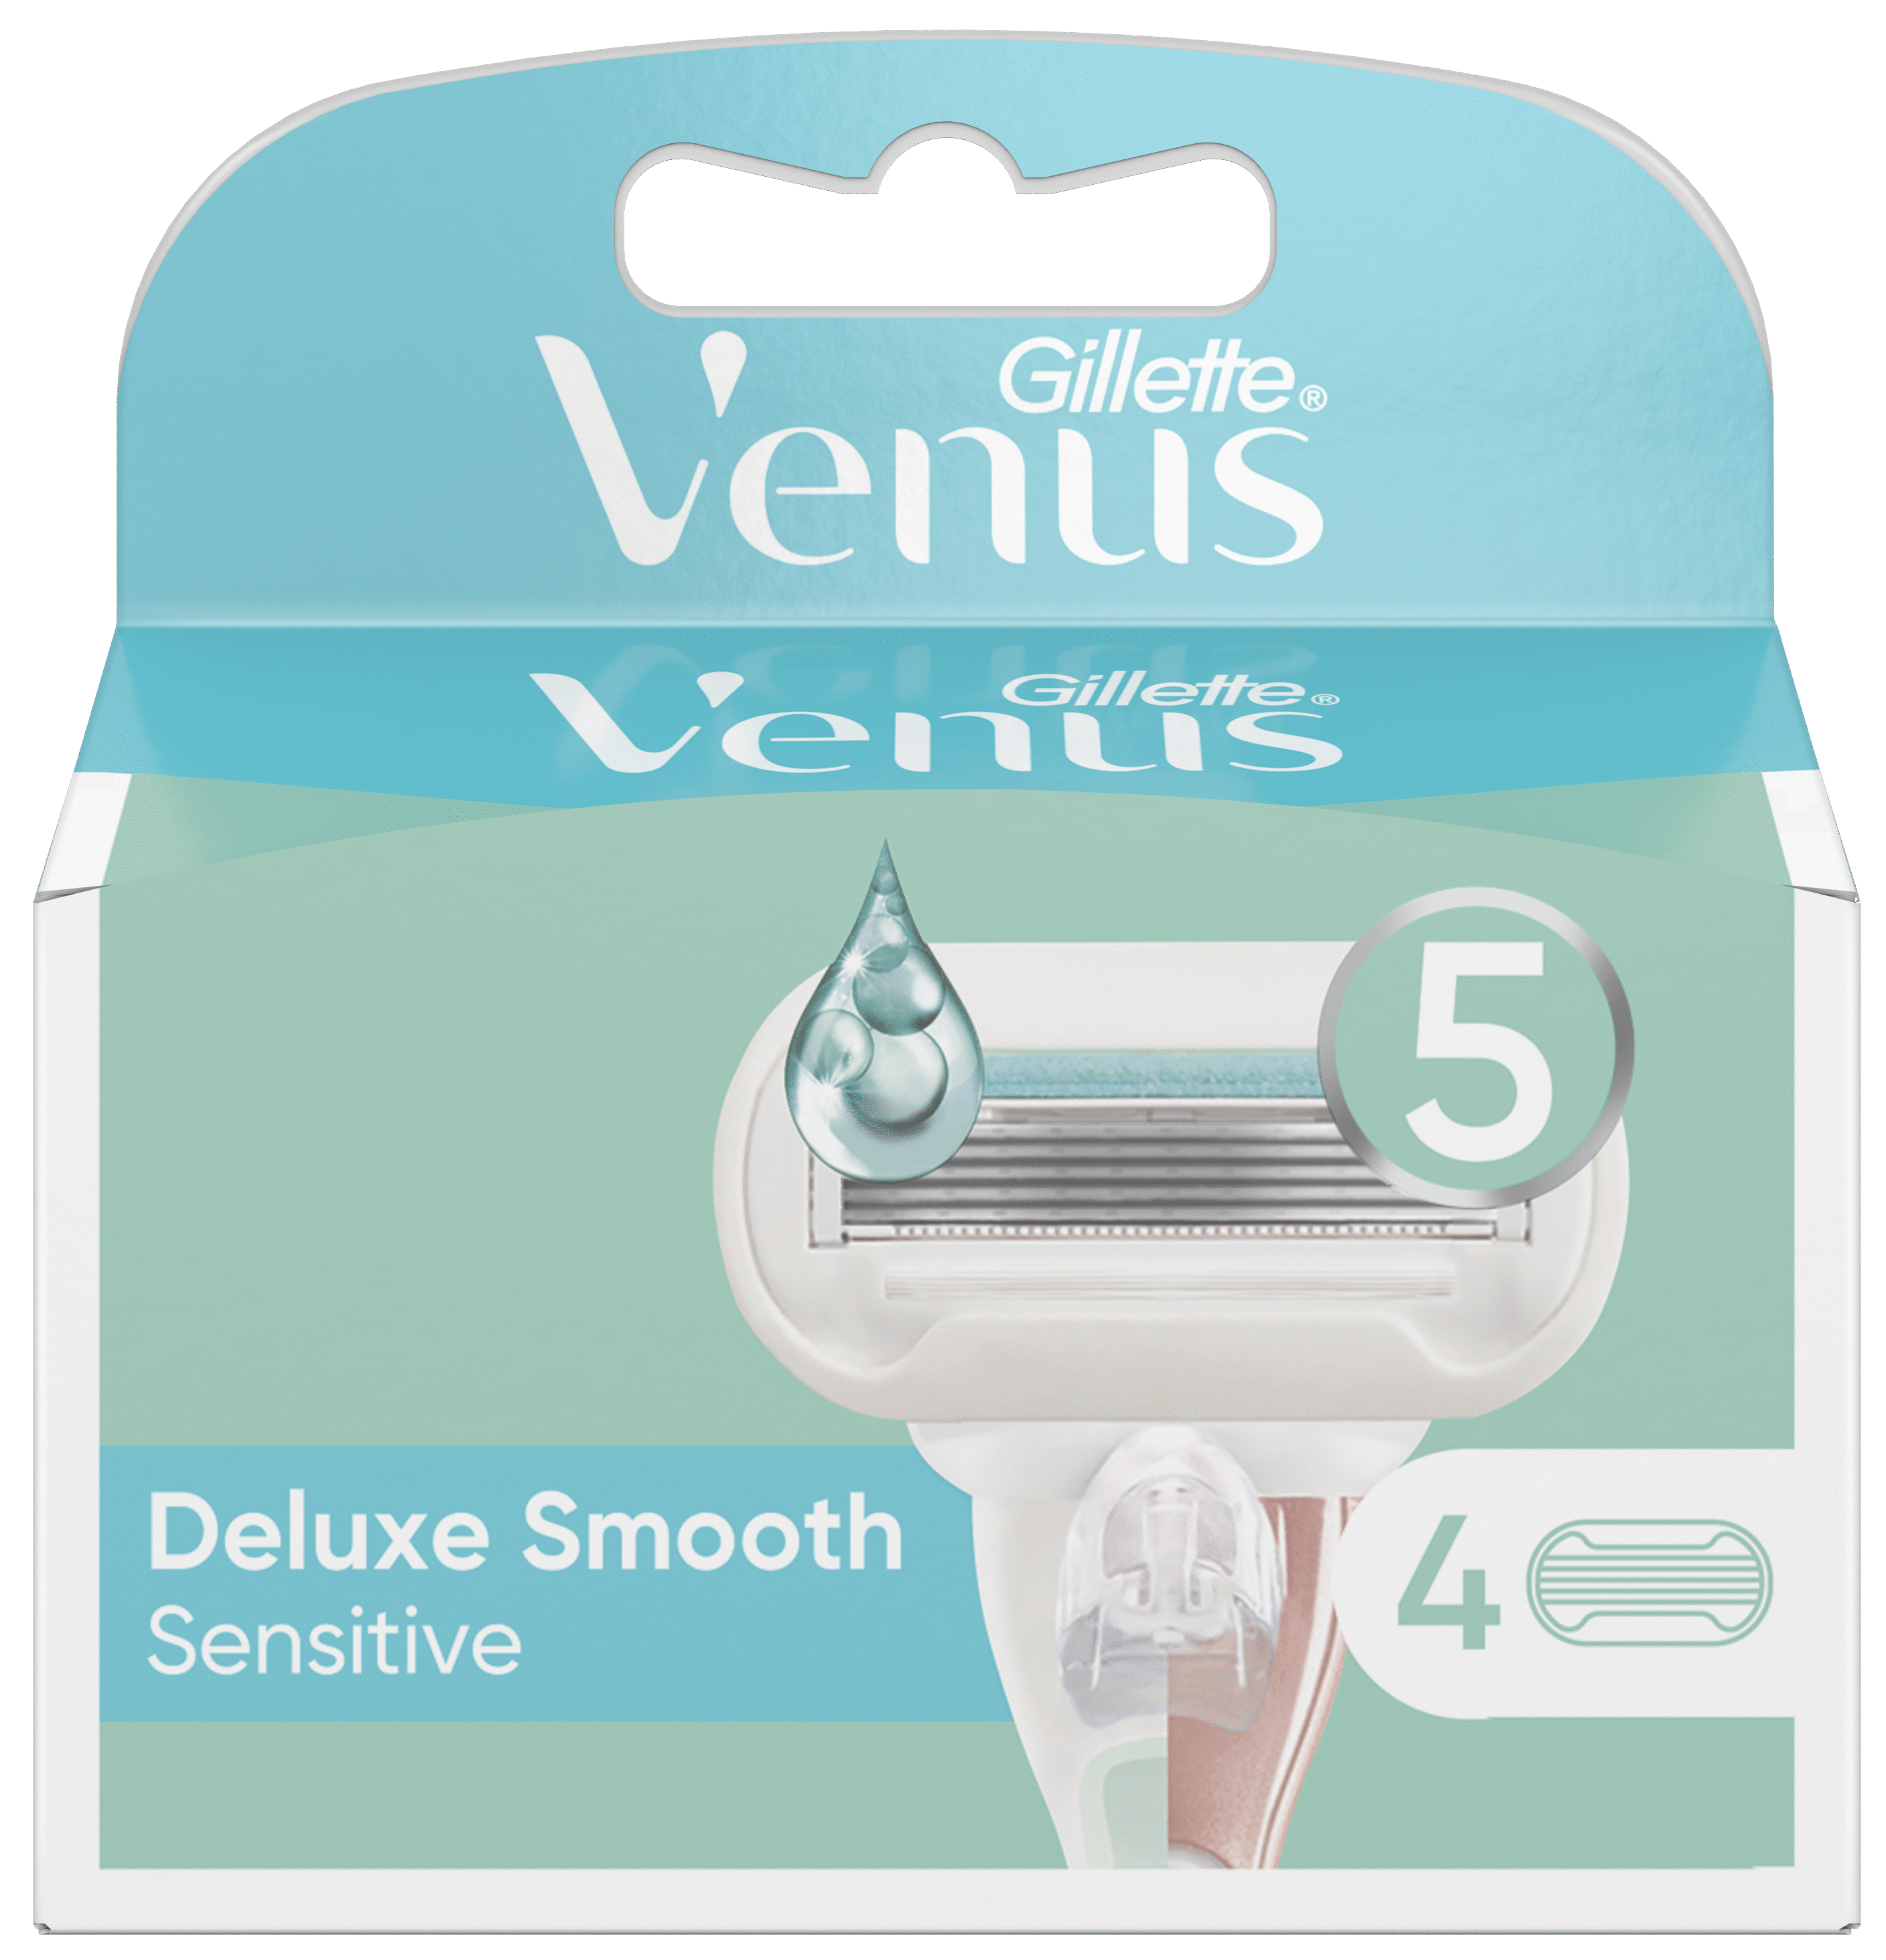 Gillette Venus Deluxe Smooth Sensitive barberblader, 4 stk.